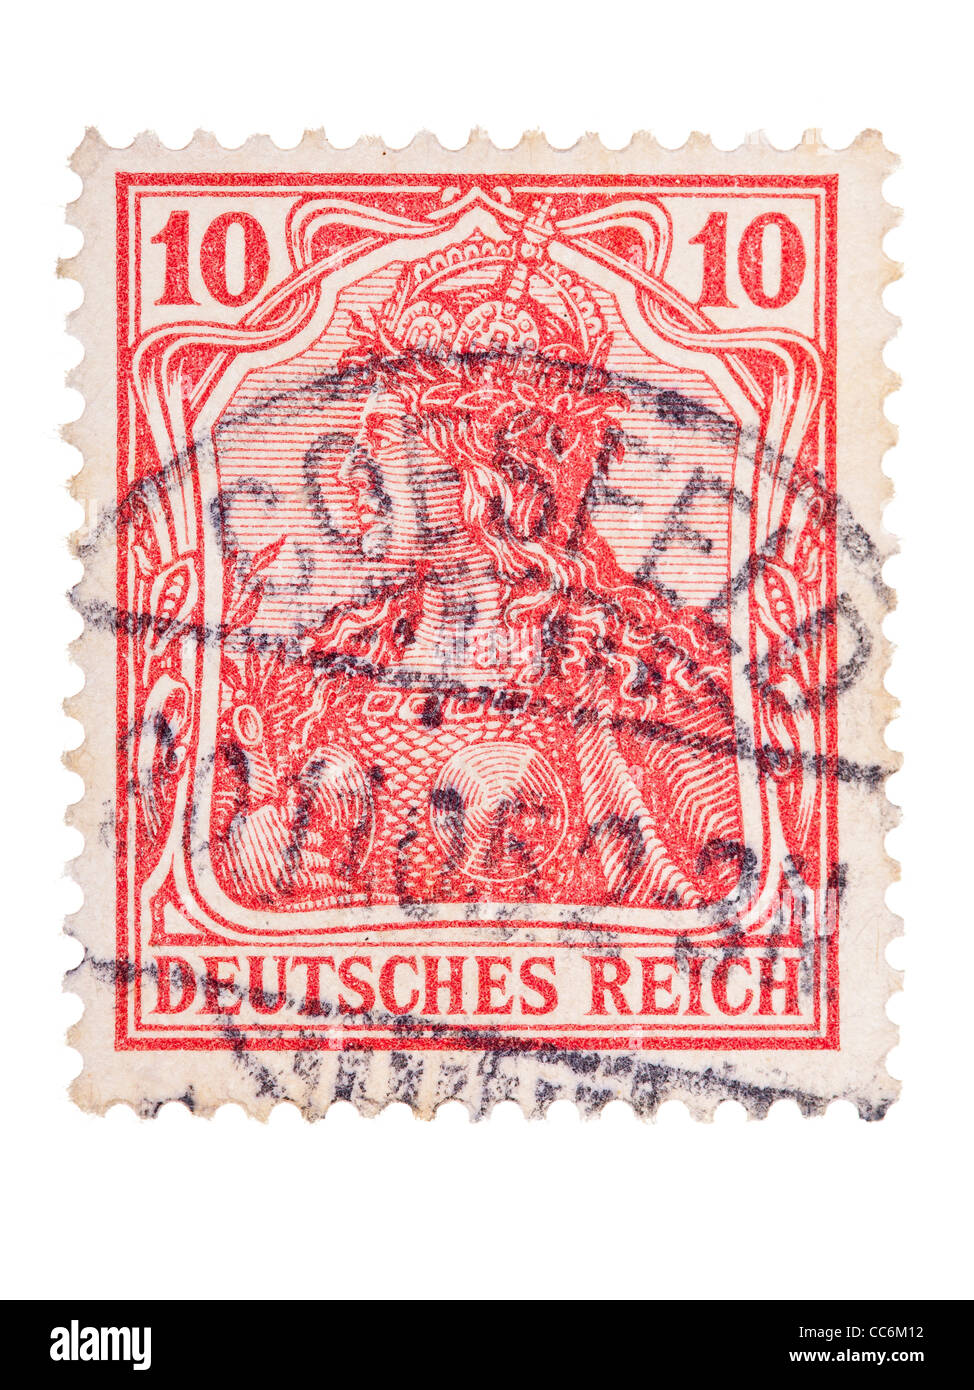 Briefmarke: Deutsches Reich, Germania, 1905, 10 Pfennig, gestempelt  Stockfotografie - Alamy